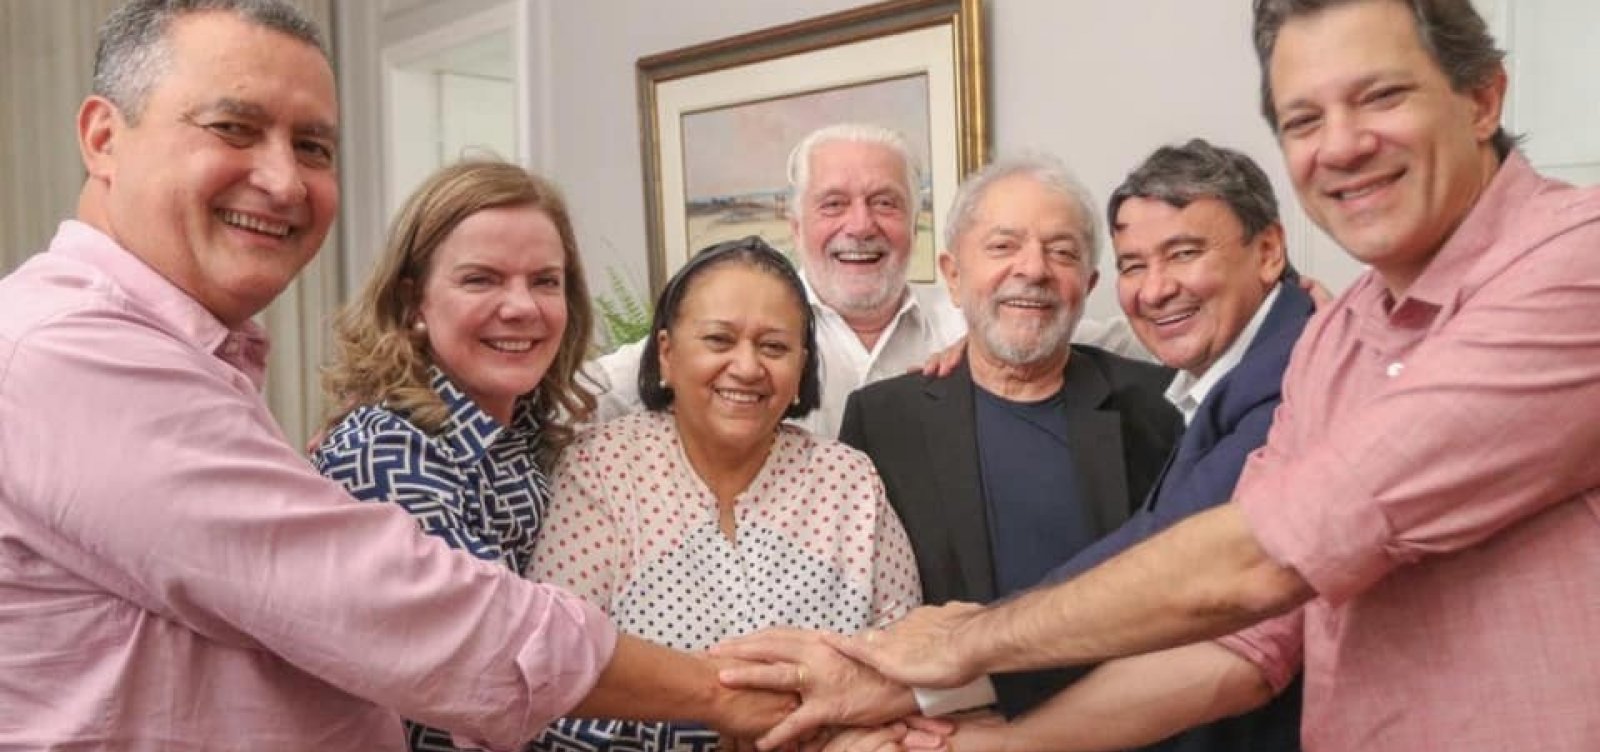 'Debatendo os desafios para a região', diz Lula após encontro com governadores do NE em Salvador